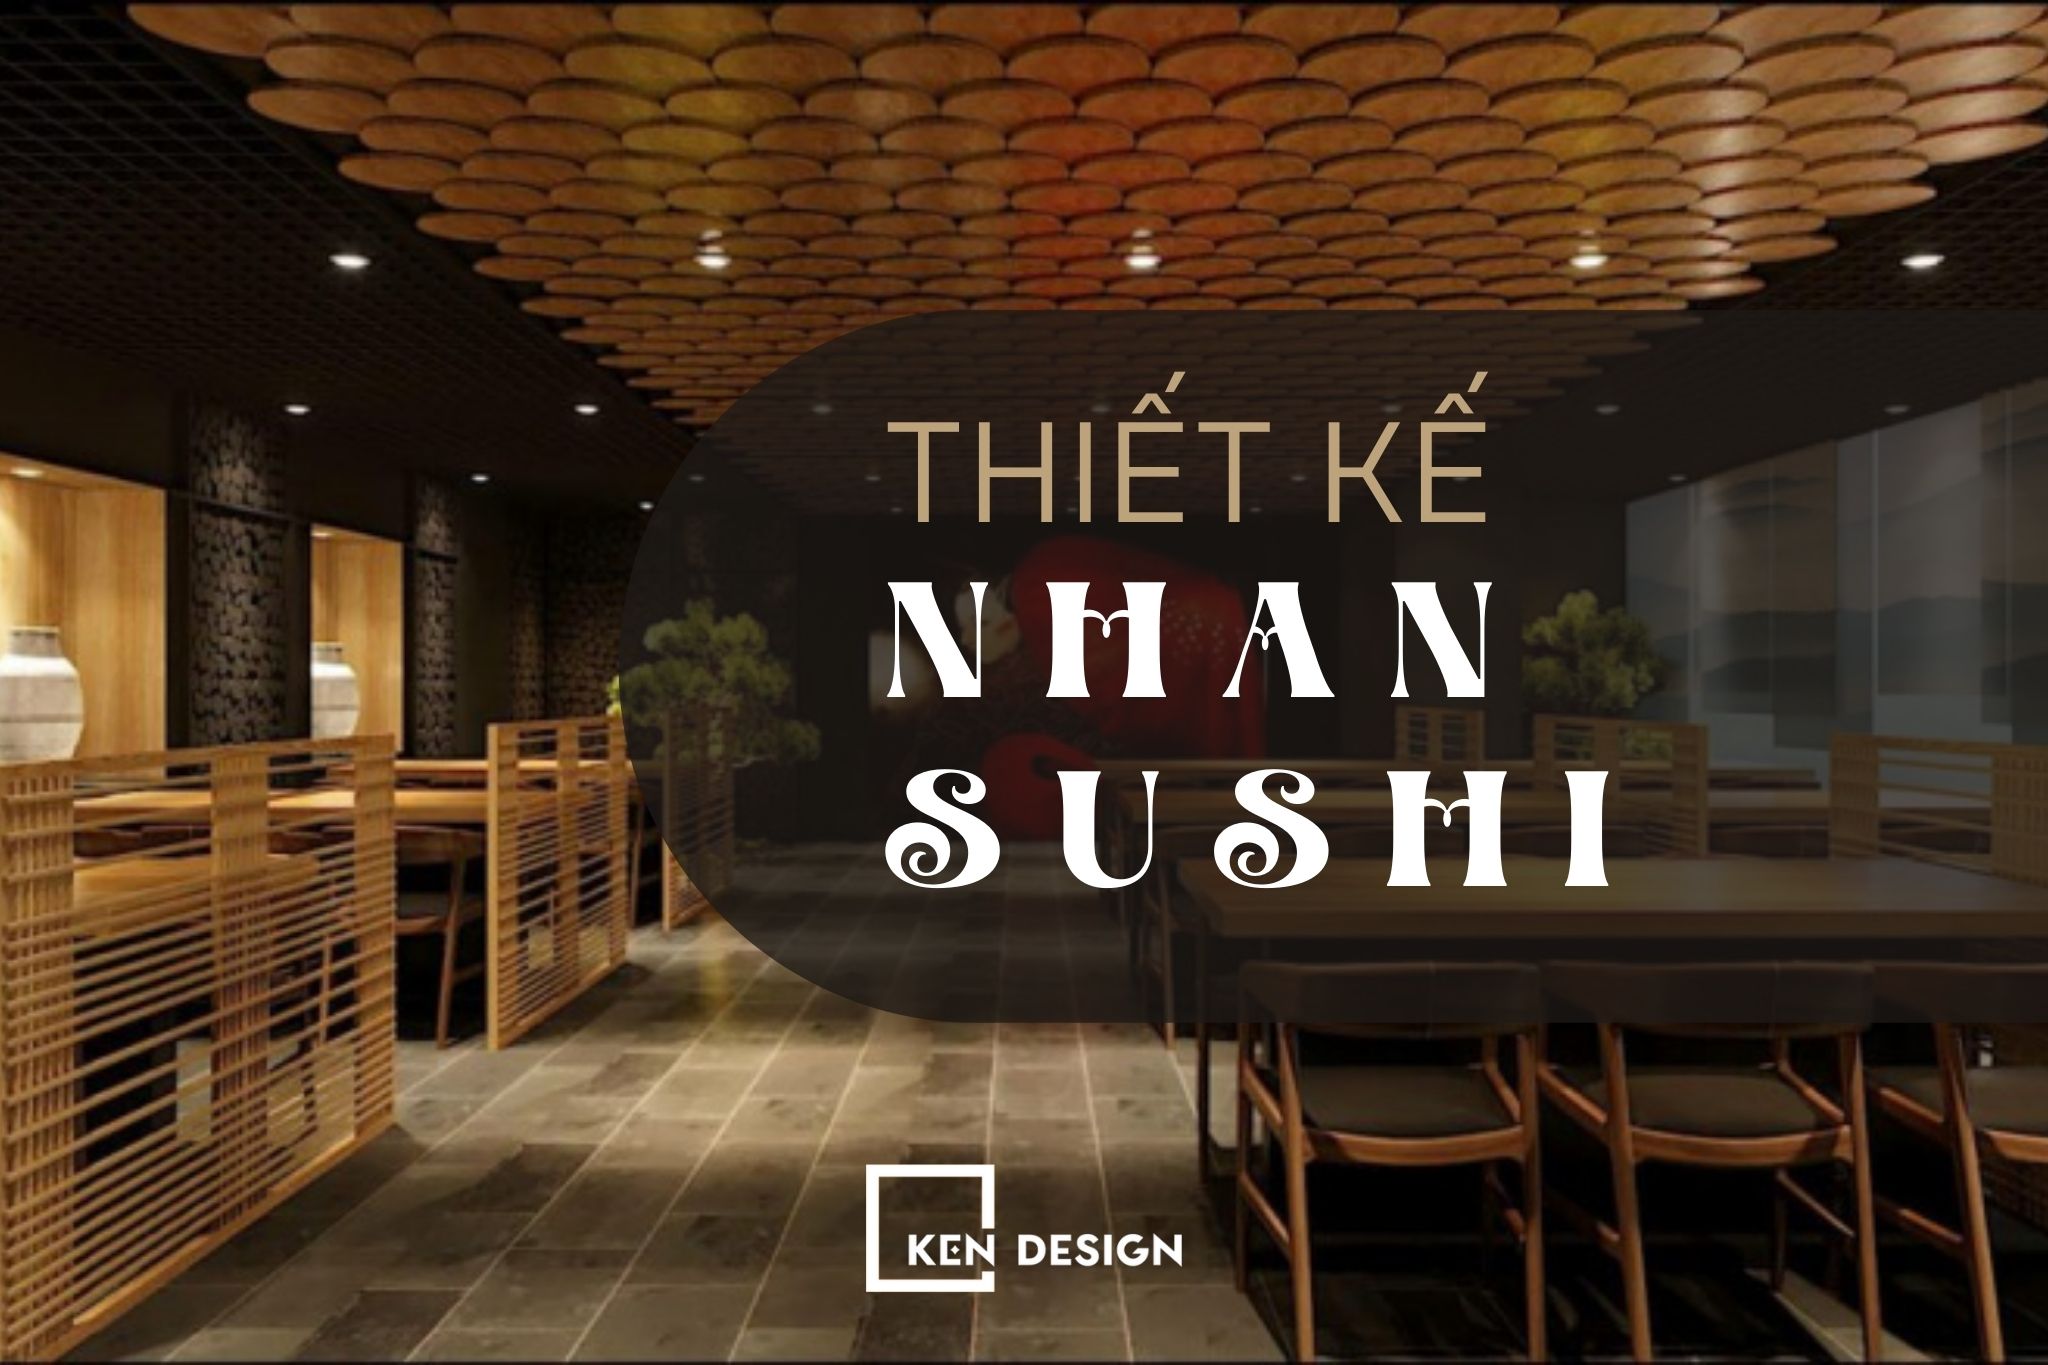 Thiết kế Nhan Sushi - không gian cao cấp, sang trọng và hiện đại